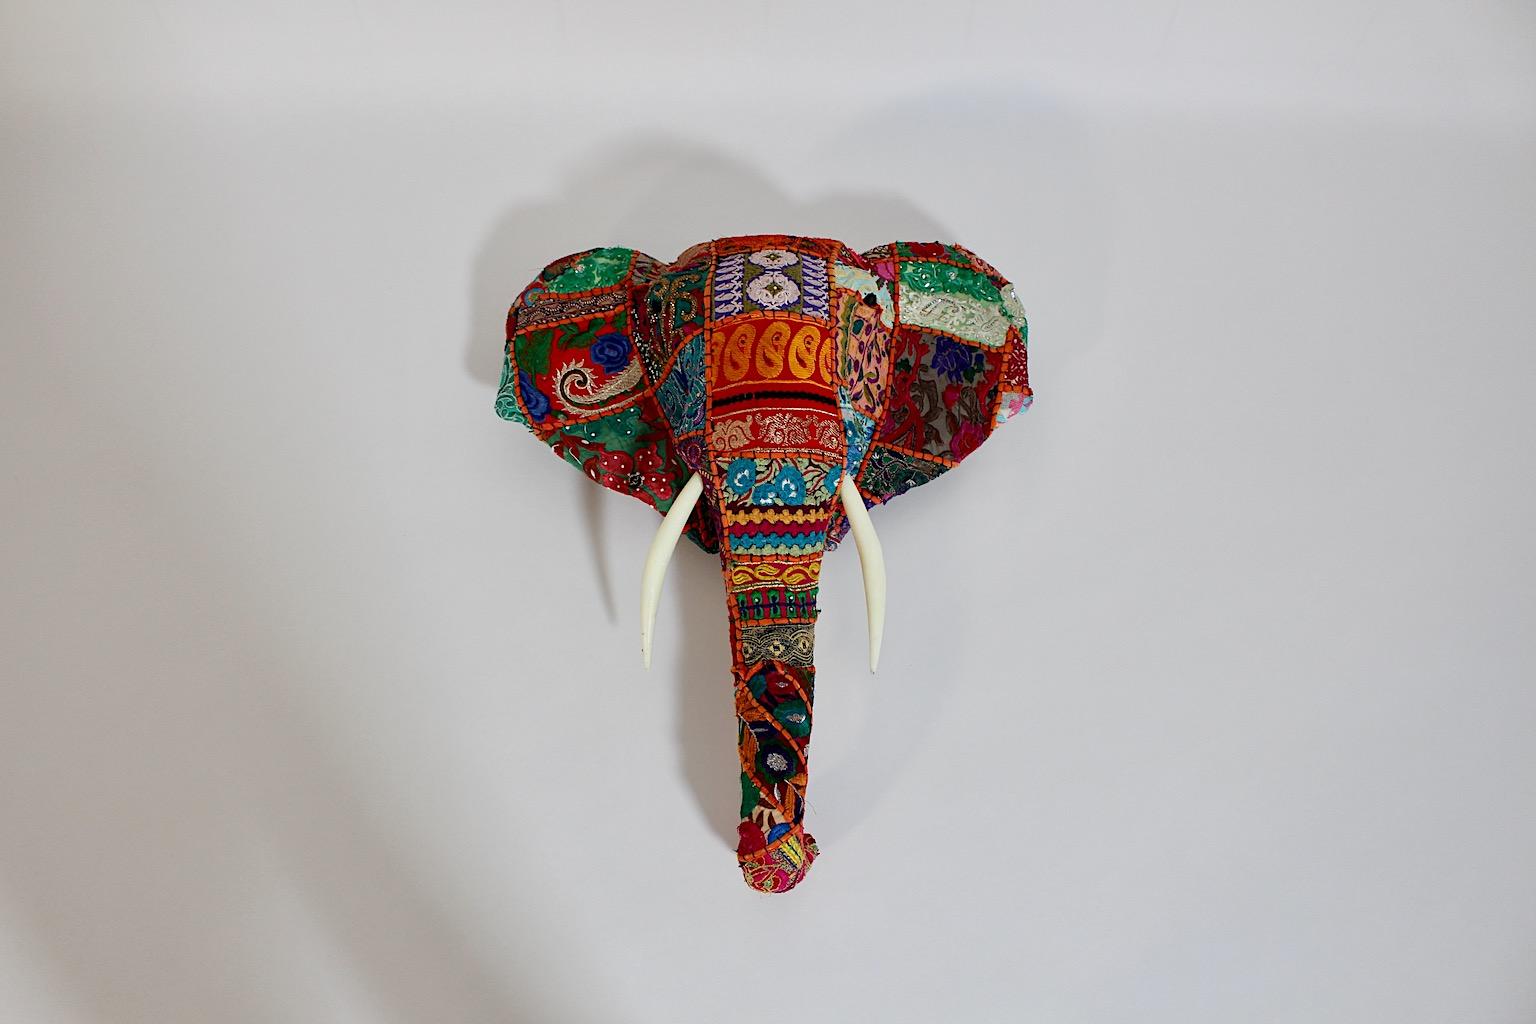 Animal Vintage Folk Art fait main broderie tissu monté au mur tête d'éléphant à partir de tissu sari vintage, circa 1980 Inde.
Une étonnante tête d'éléphant vintage en patchwork comme un trophée à partir d'un merveilleux tissu de coton vintage dans